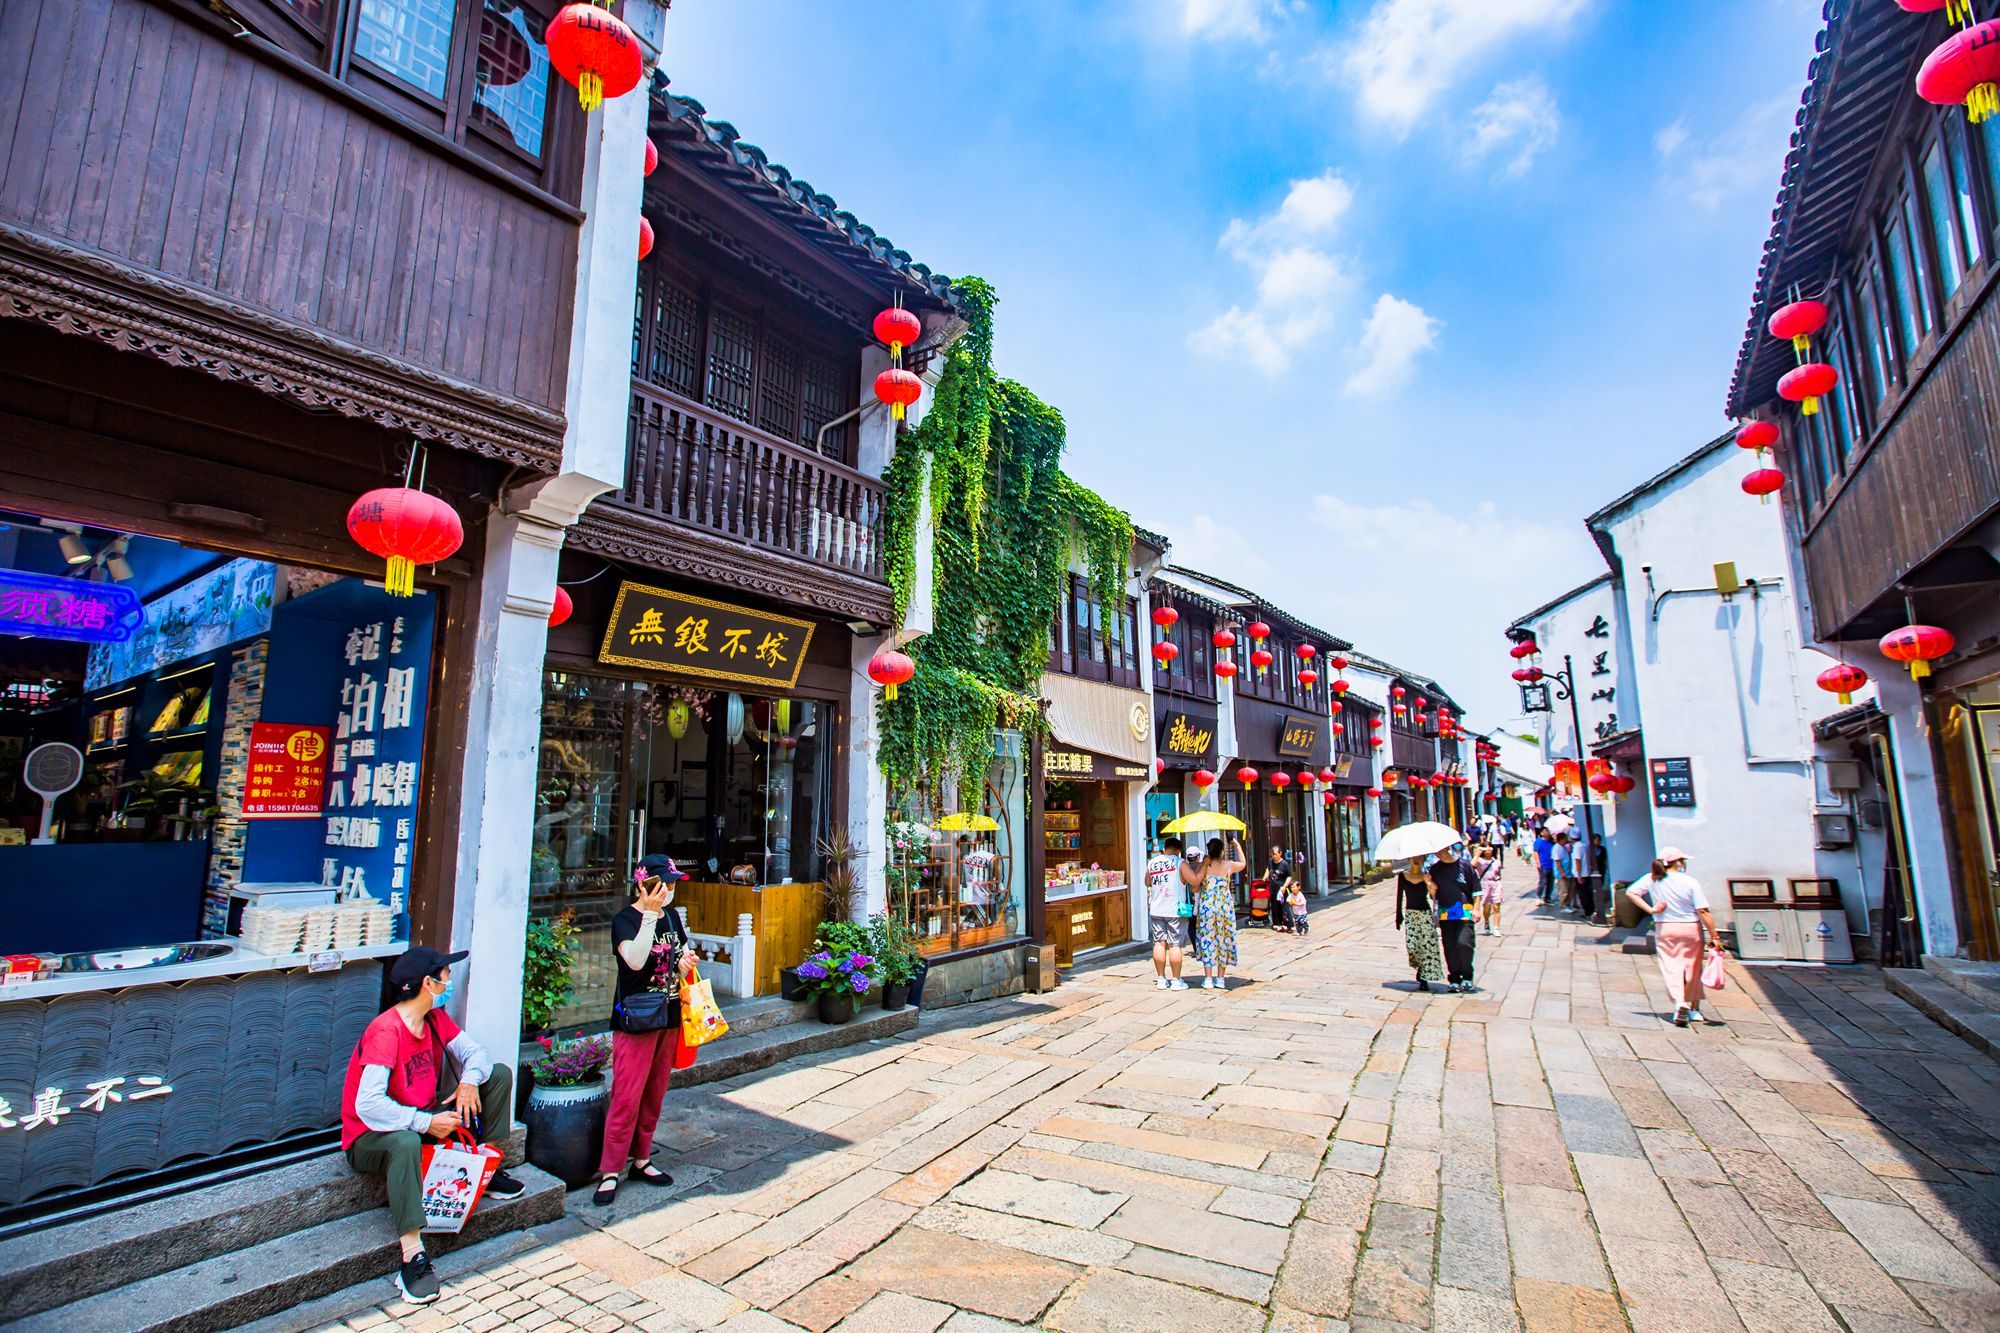 苏州山塘街,已有千年历史,游客众多,被誉为姑苏古城第一街